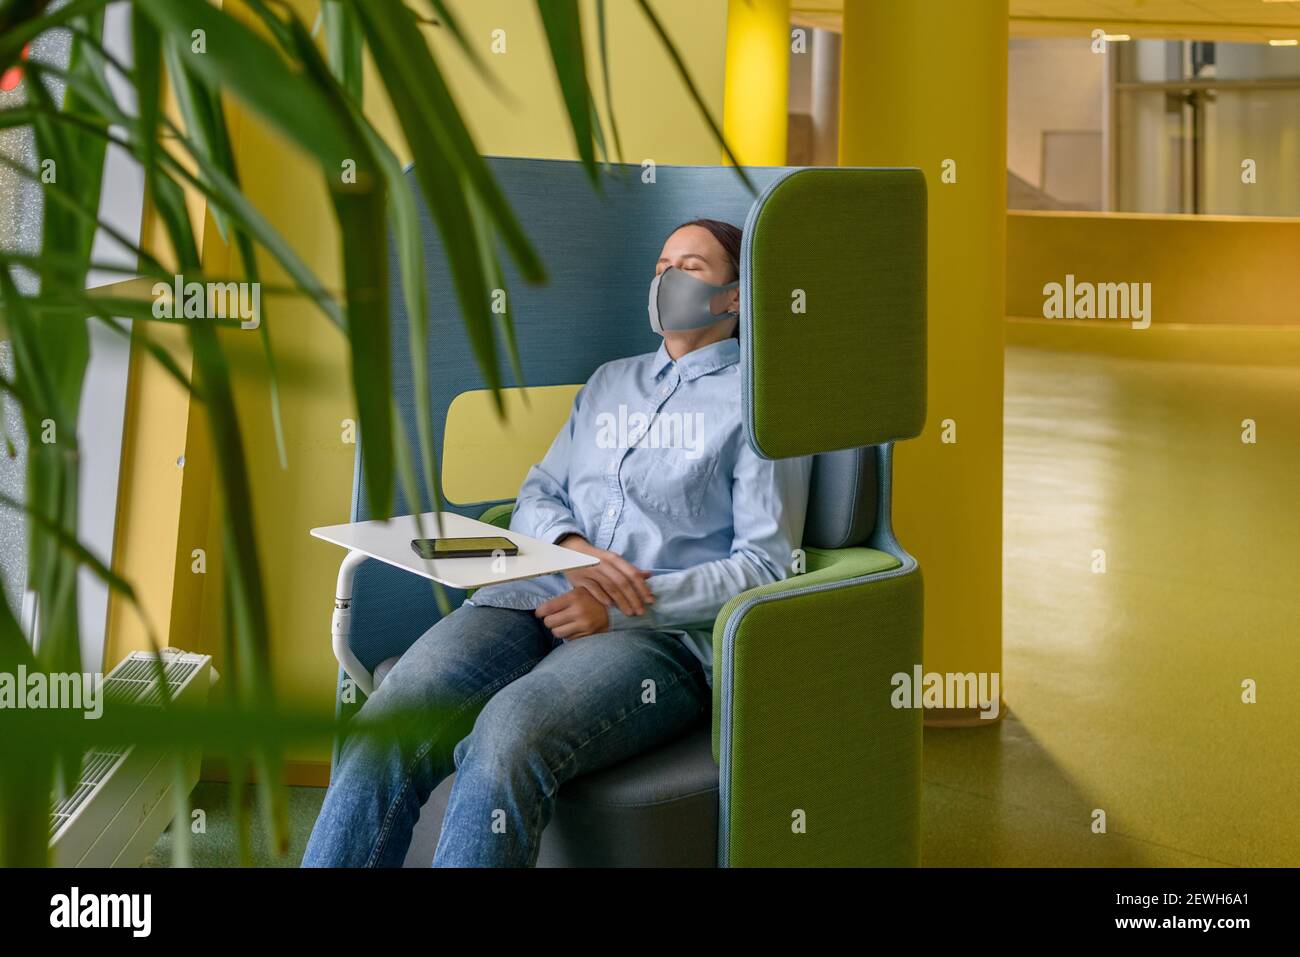 Frau in Gesichtsmaske schlafen entspannend auf bequemen Stuhl in der Ecke des Büros oder der Universität mit Telefon. Soziale Distanzierung, Isolation, Einsamkeit, Alon Stockfoto